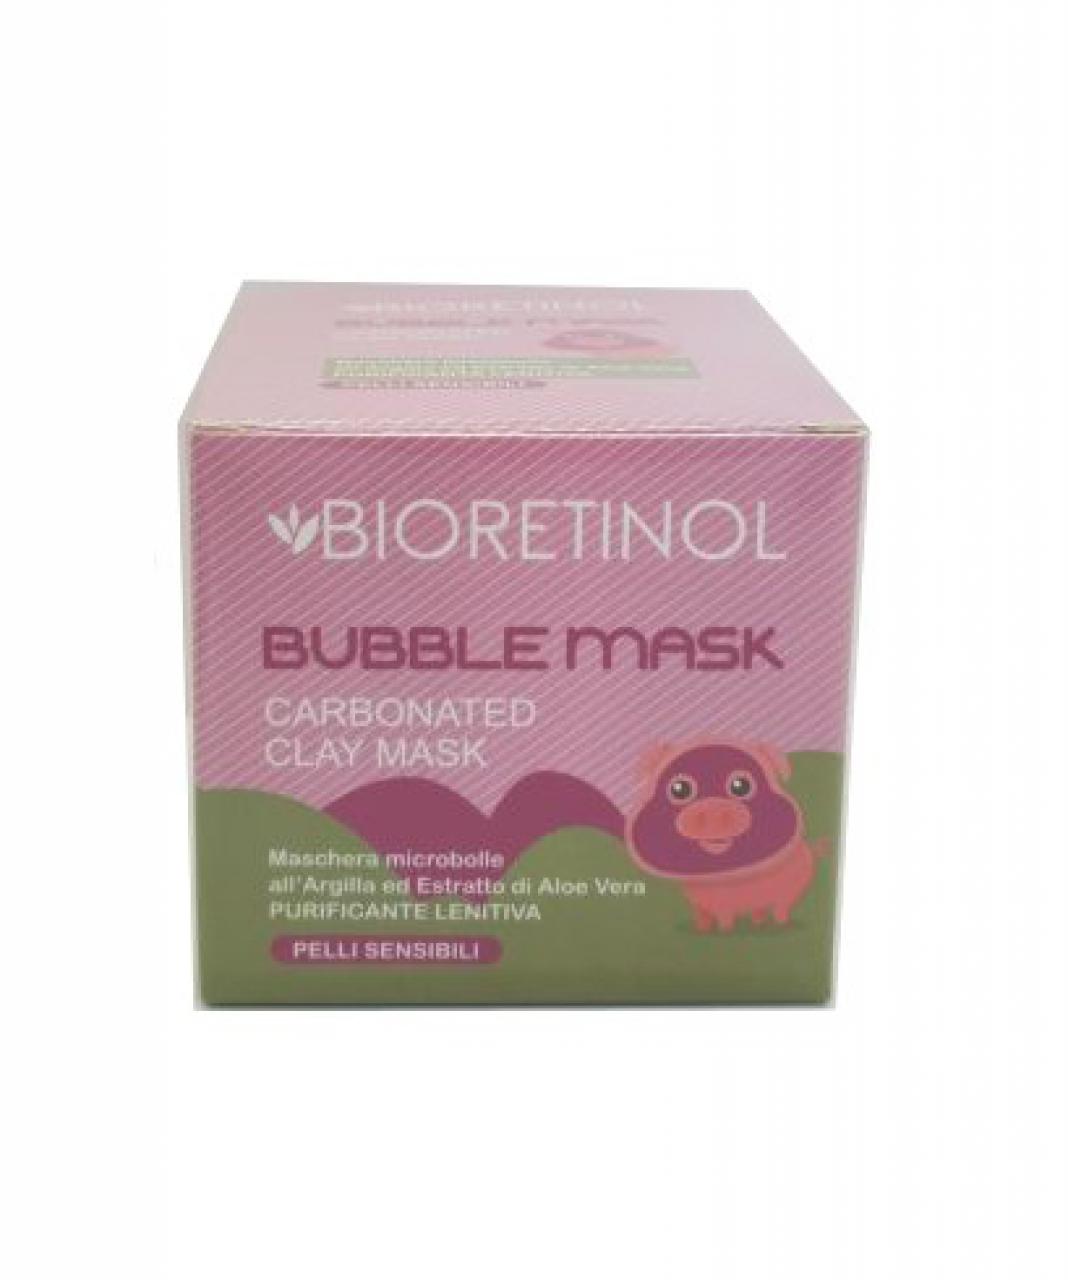 Bioretinol bubble mask pelli sensibili